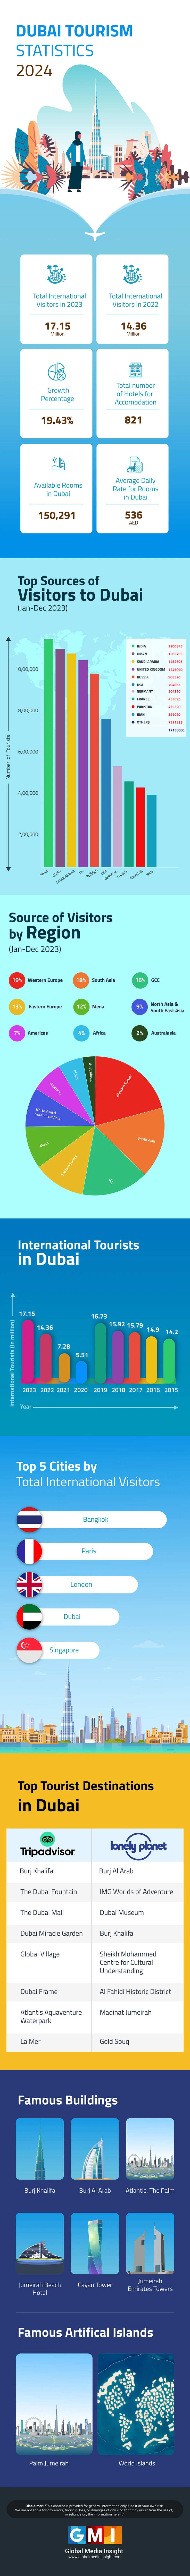 tourism statistics in dubai